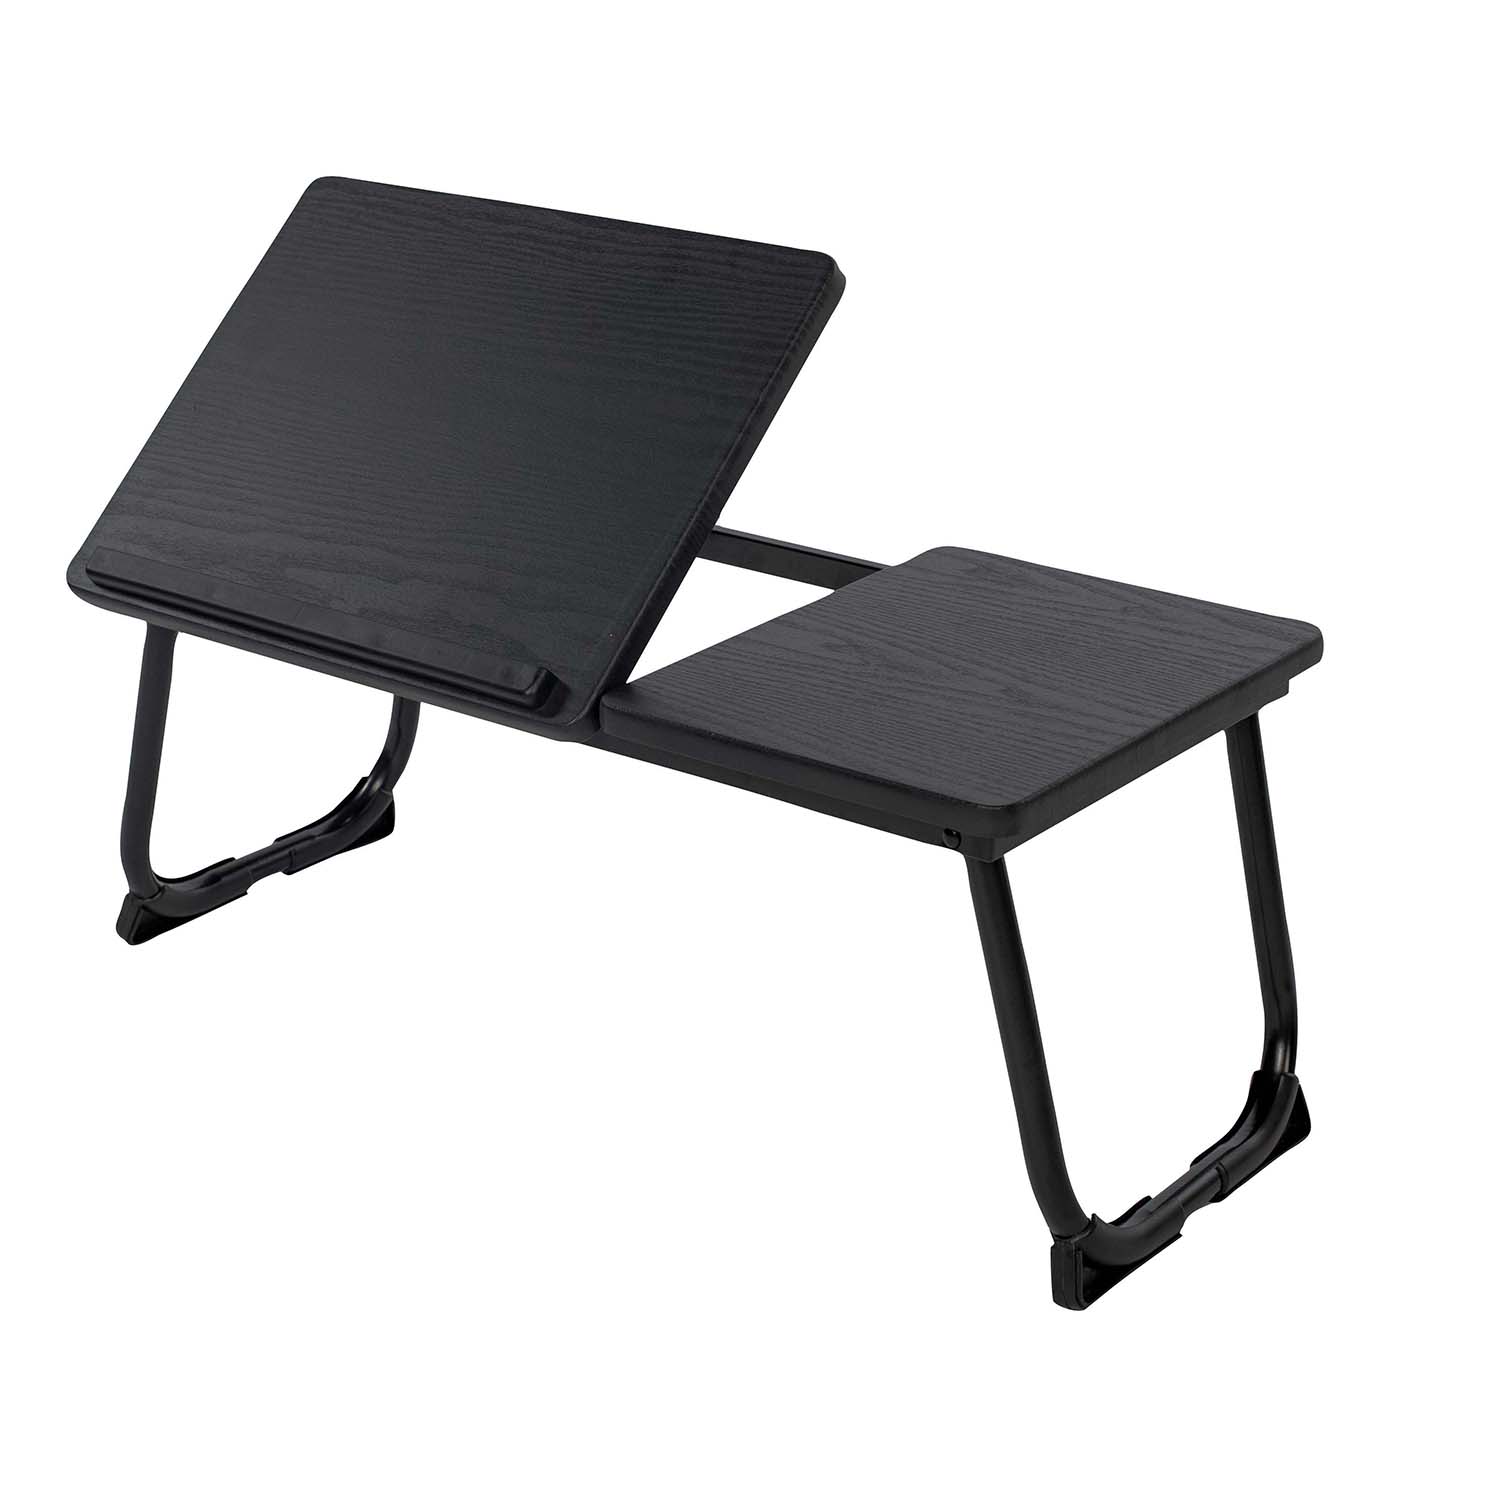 1x Table d'ordinateur portable pliable Noir Plateau de lit HxlxP